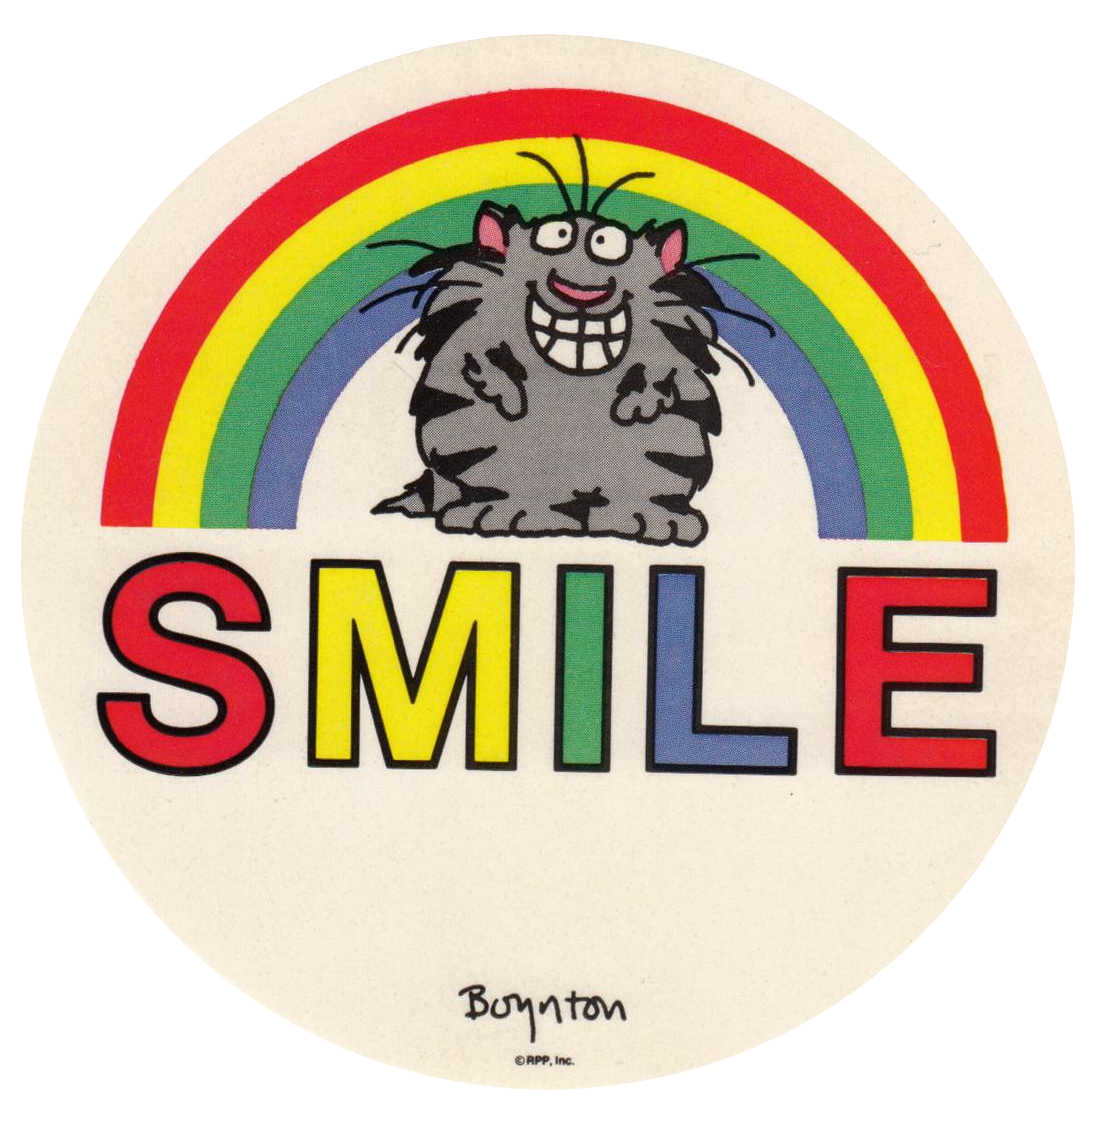 gray cat says smile! (by sandra boynton)